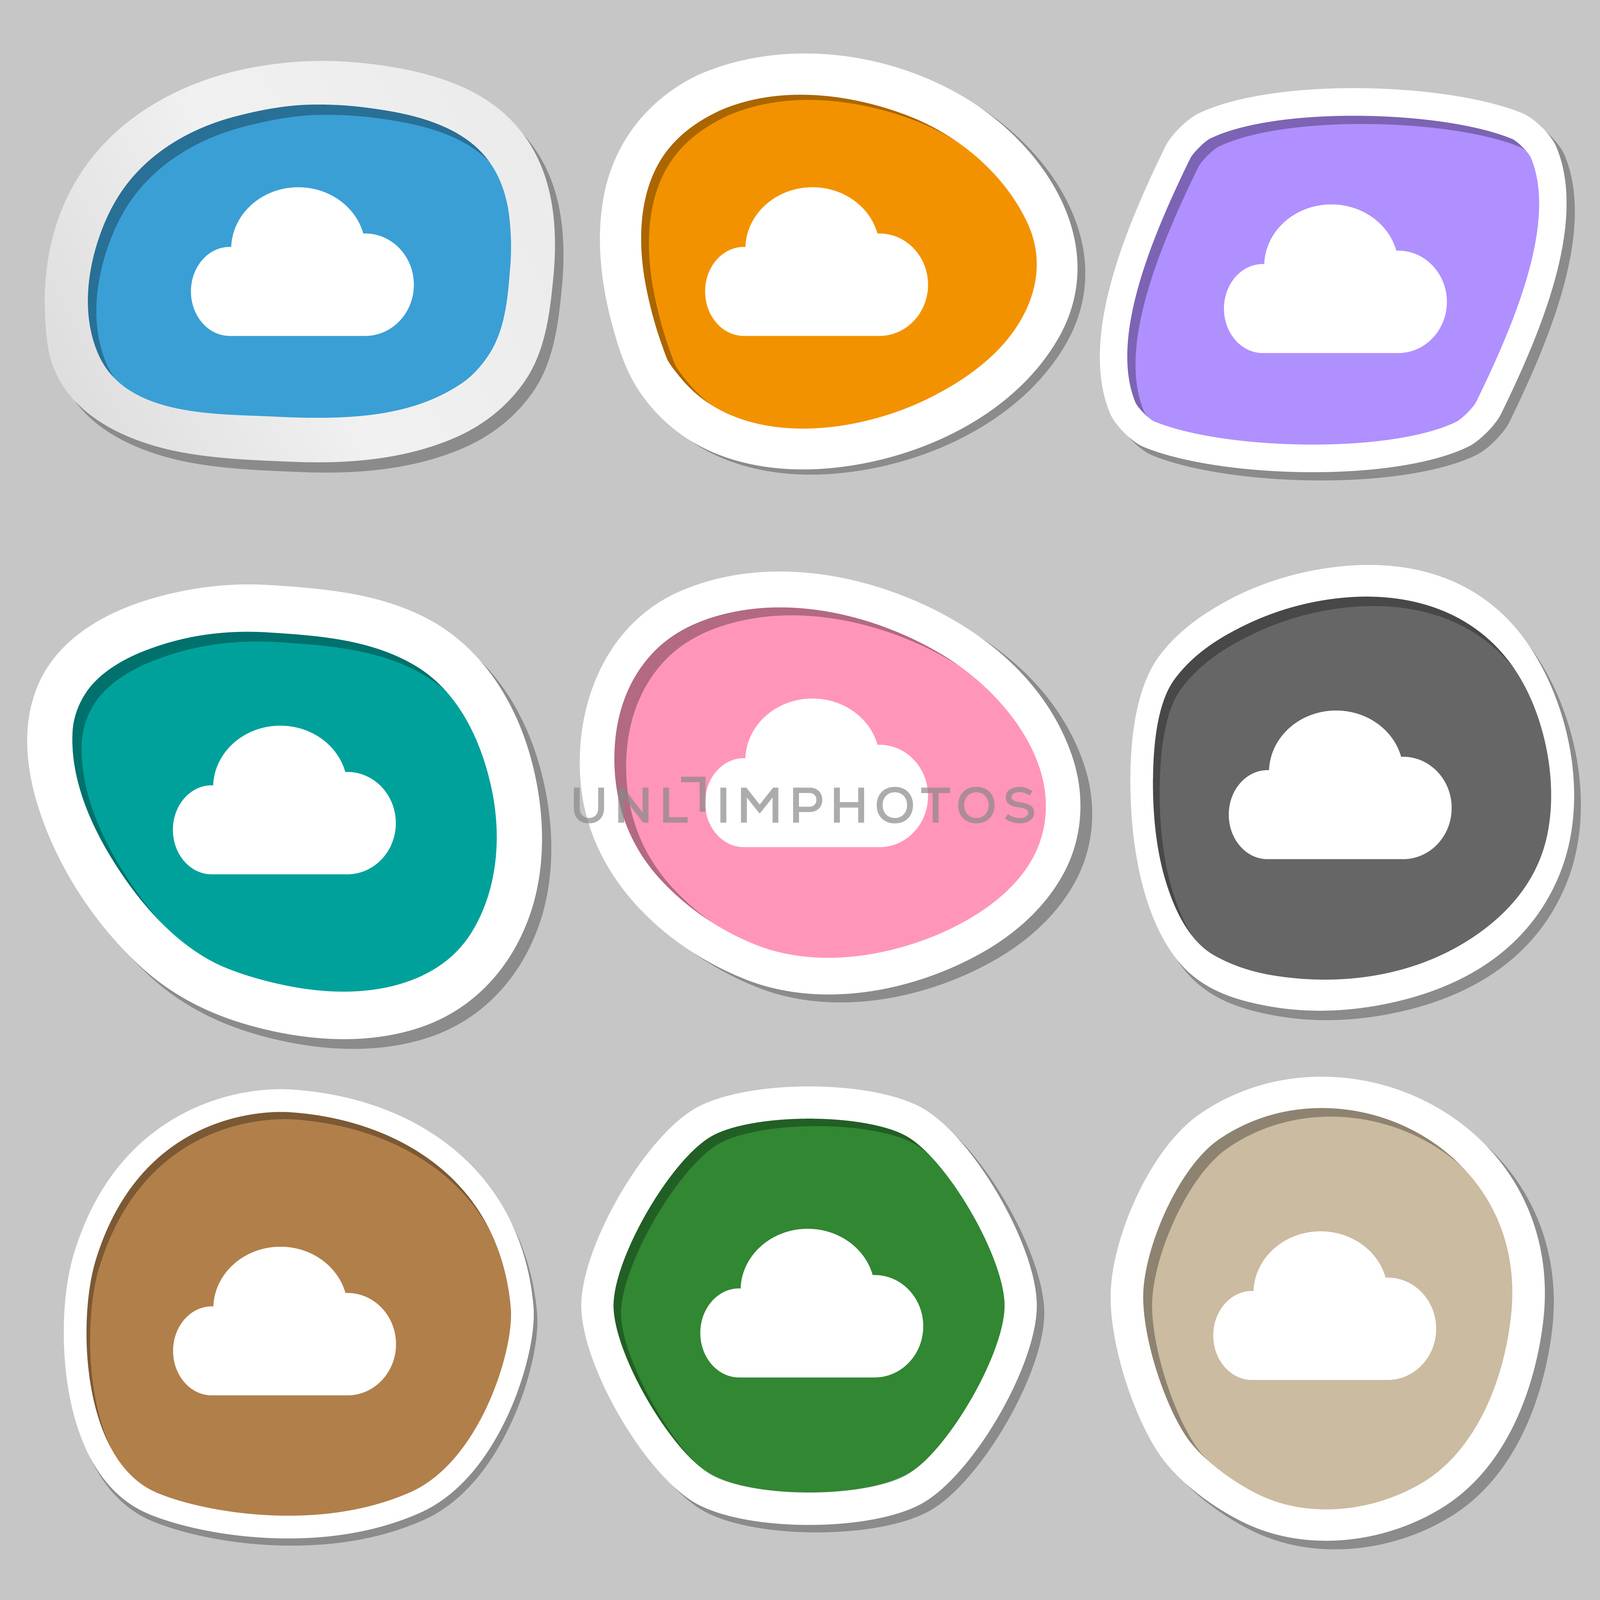 cloud icon symbols. Multicolored paper stickers. illustration